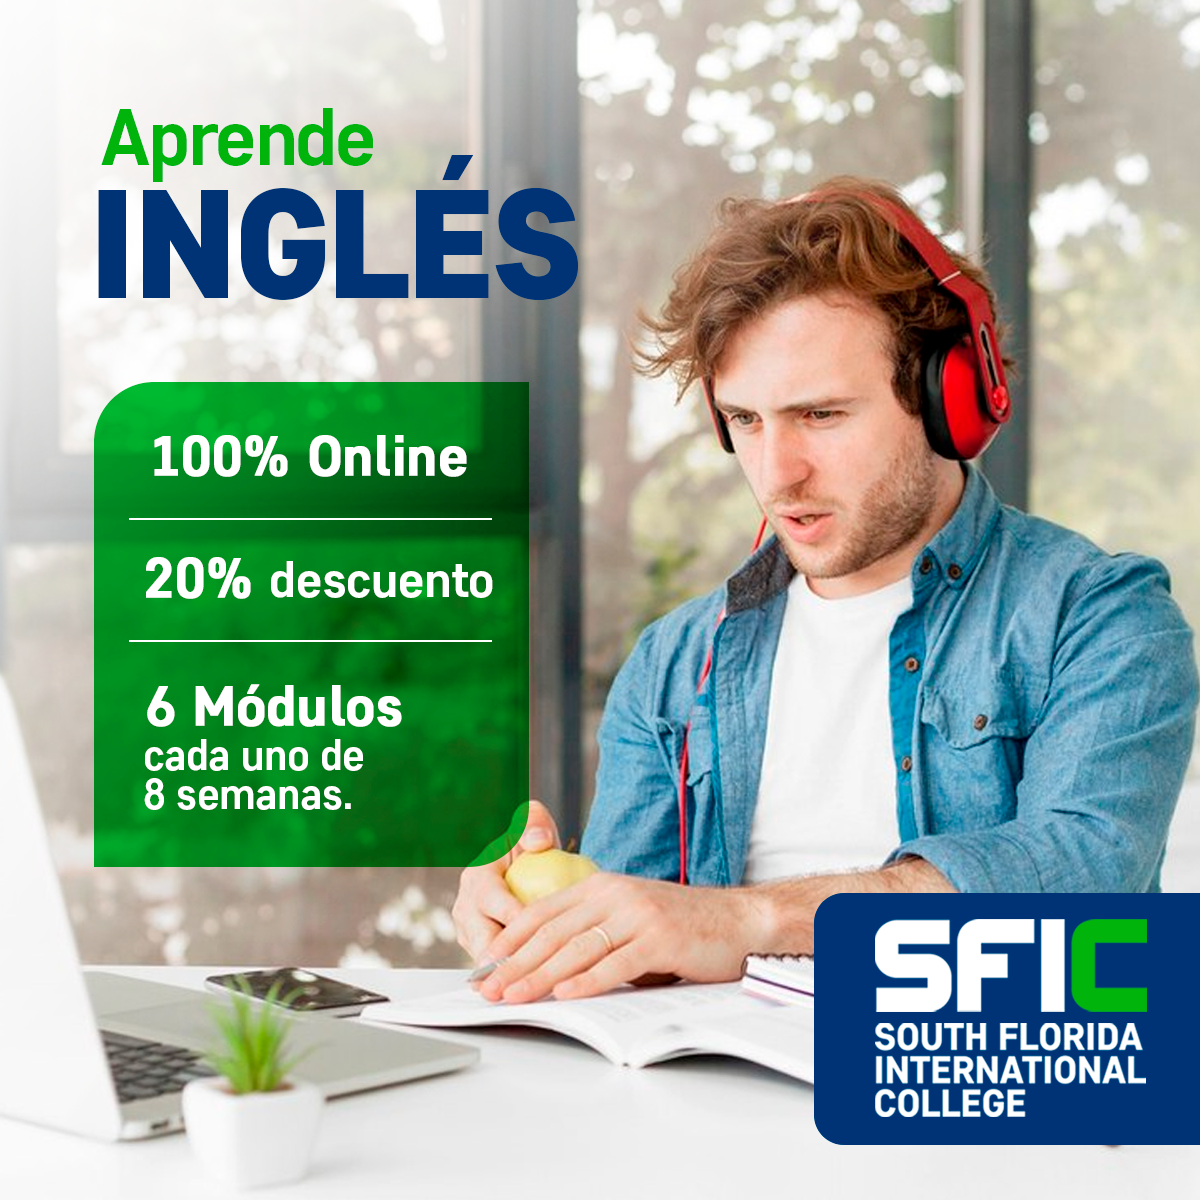 South Florida International College Obtengan un 20% de descuento en nuestro programa de inglés.